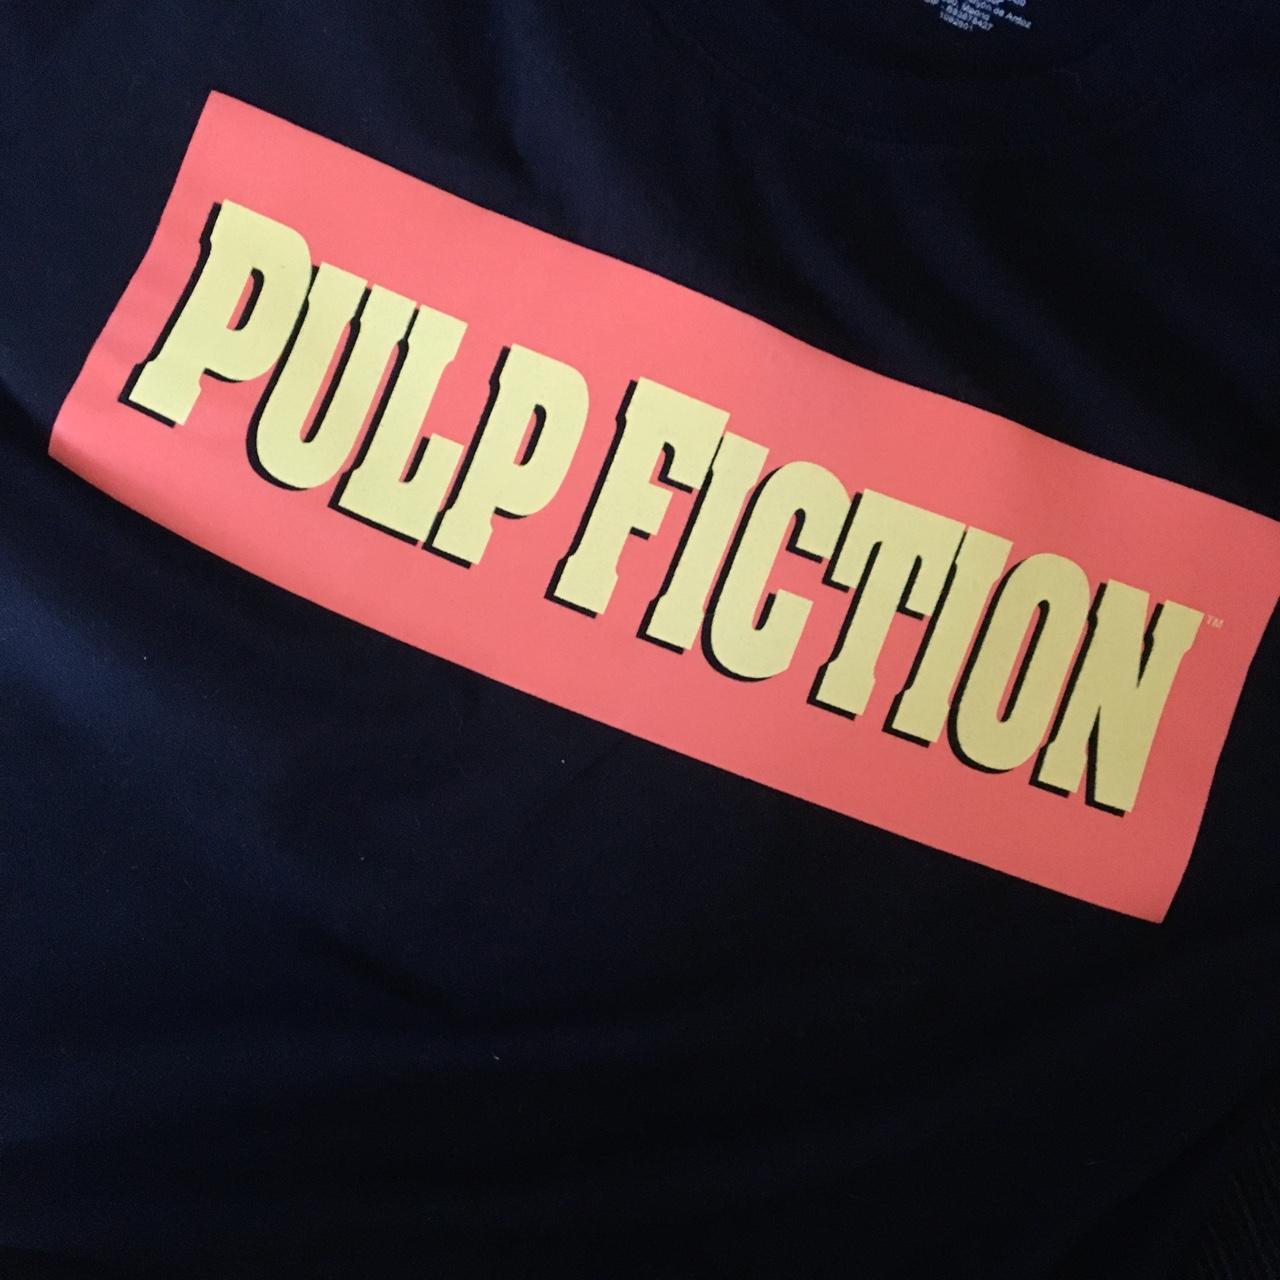 PULP FICTION Miramax T Shirt size S (pit to pit 49cm - Depop